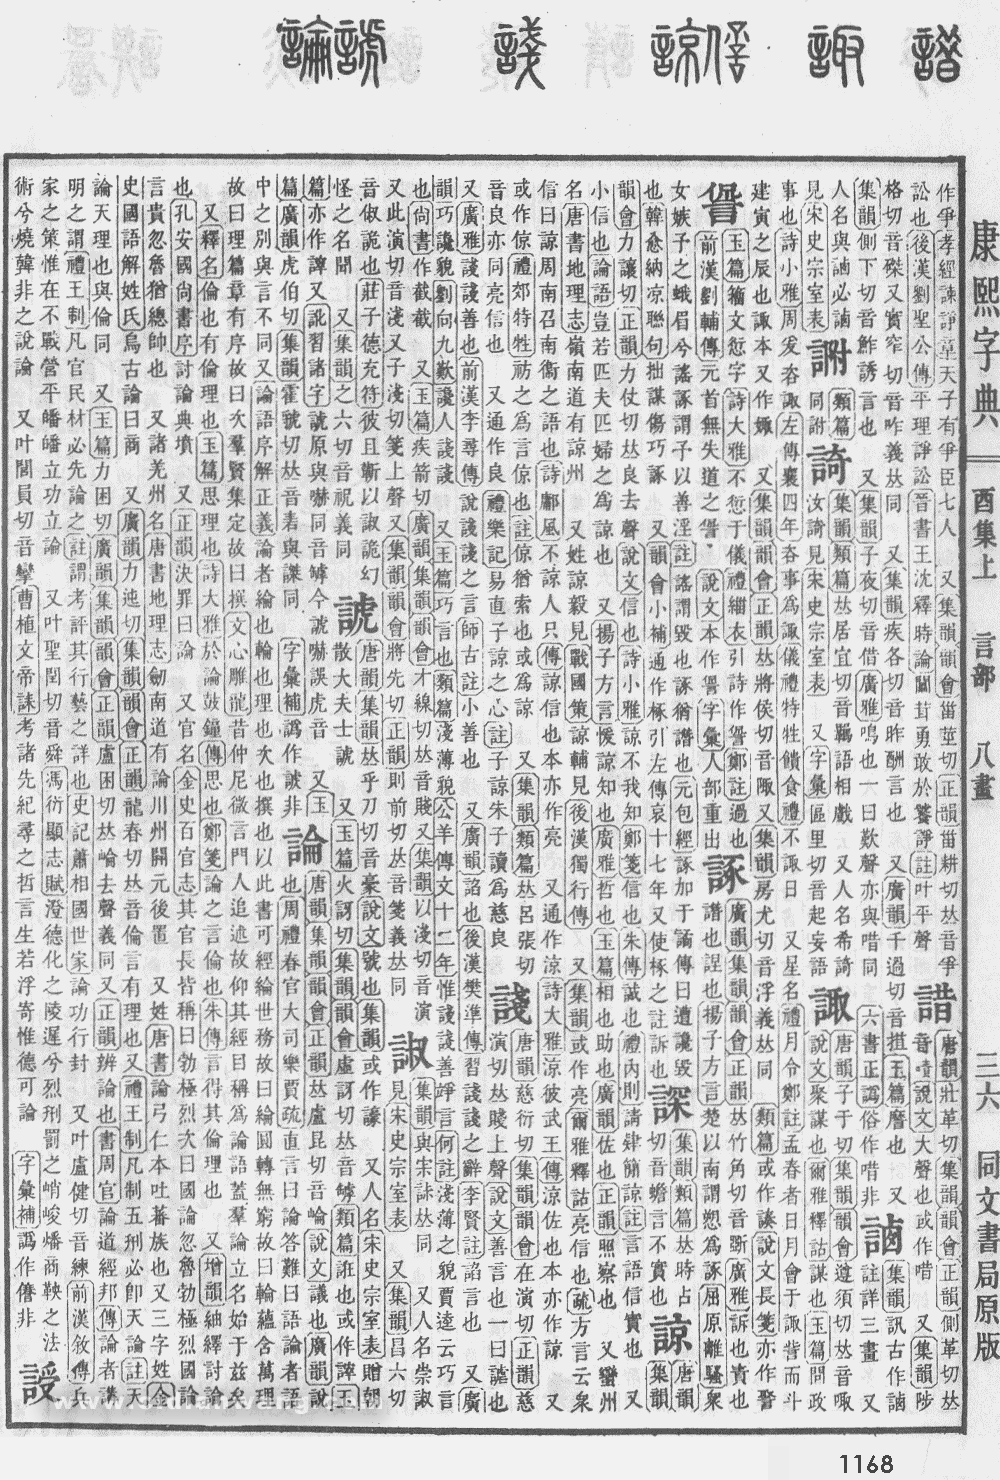 康熙字典掃描版第1168頁